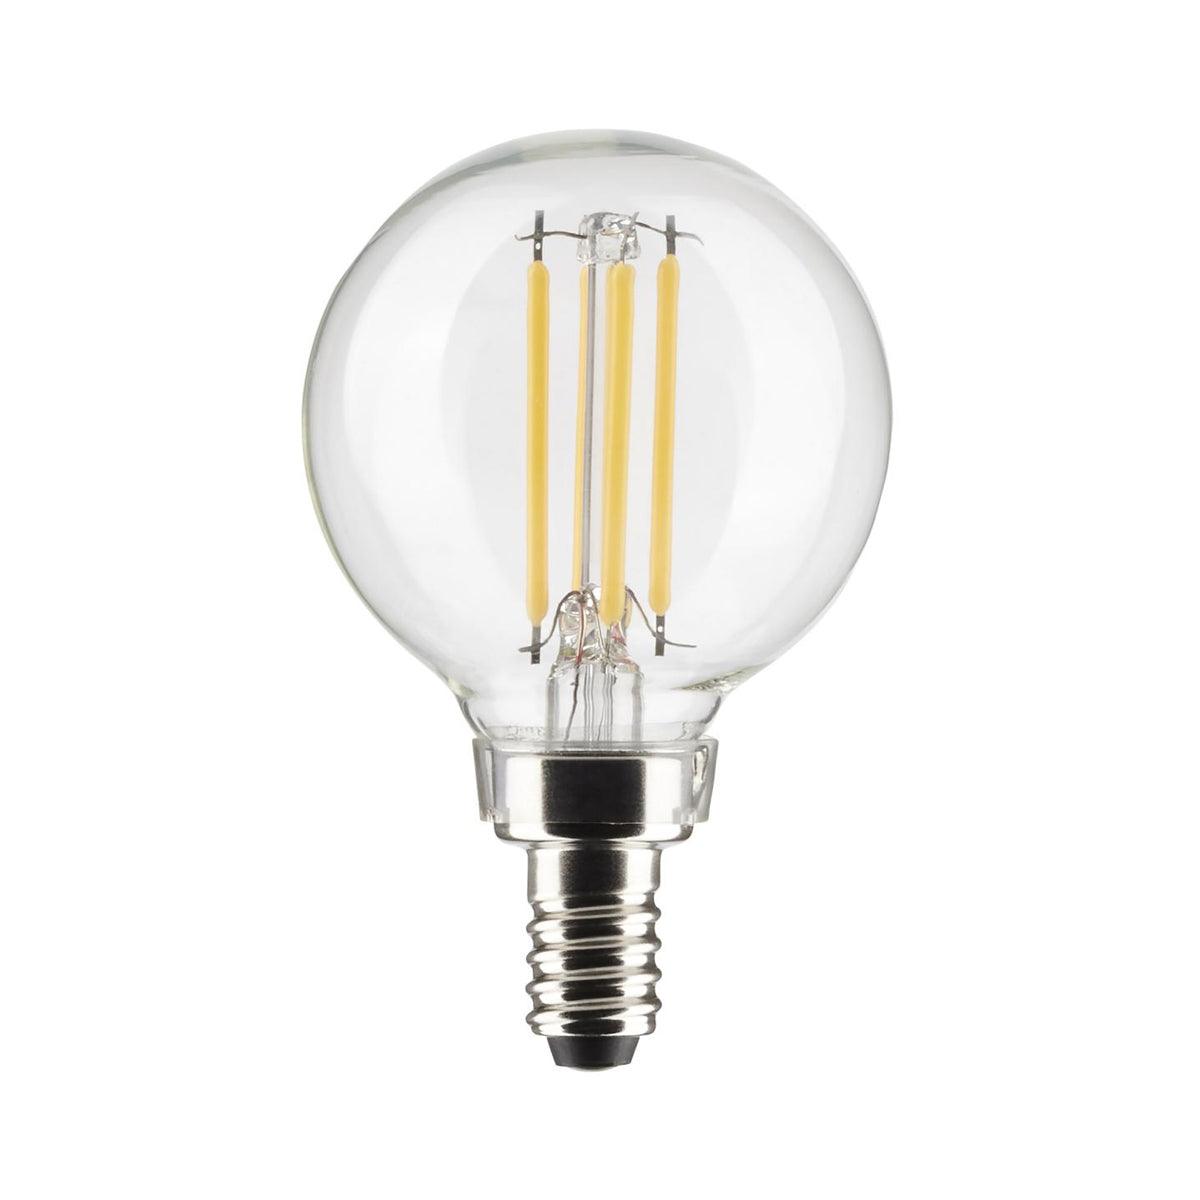 G16.5 Filament LED Globe Bulb, 6 Watt, 500 Lumens, 2700K, E12 Candelabra Base, Clear Finish, Pack Of 2 - Bees Lighting